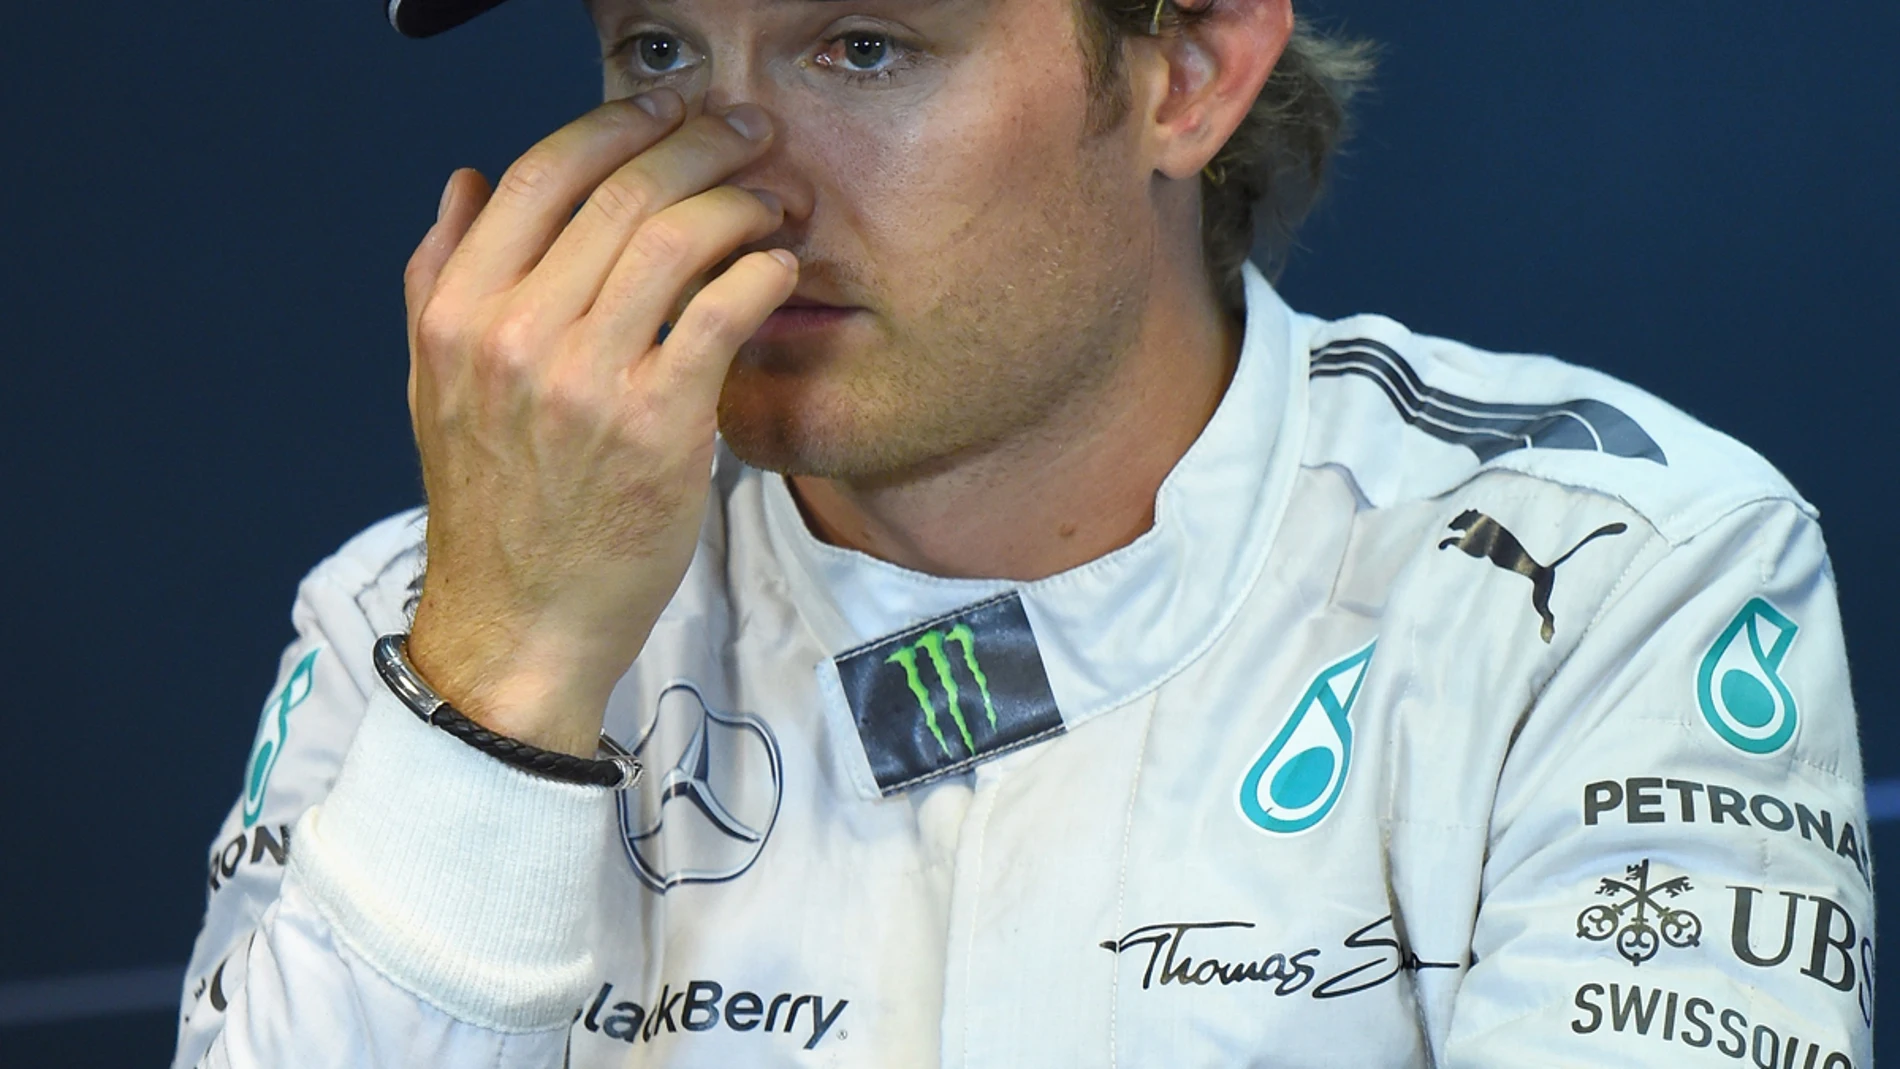 Rosberg, en rueda de prensa